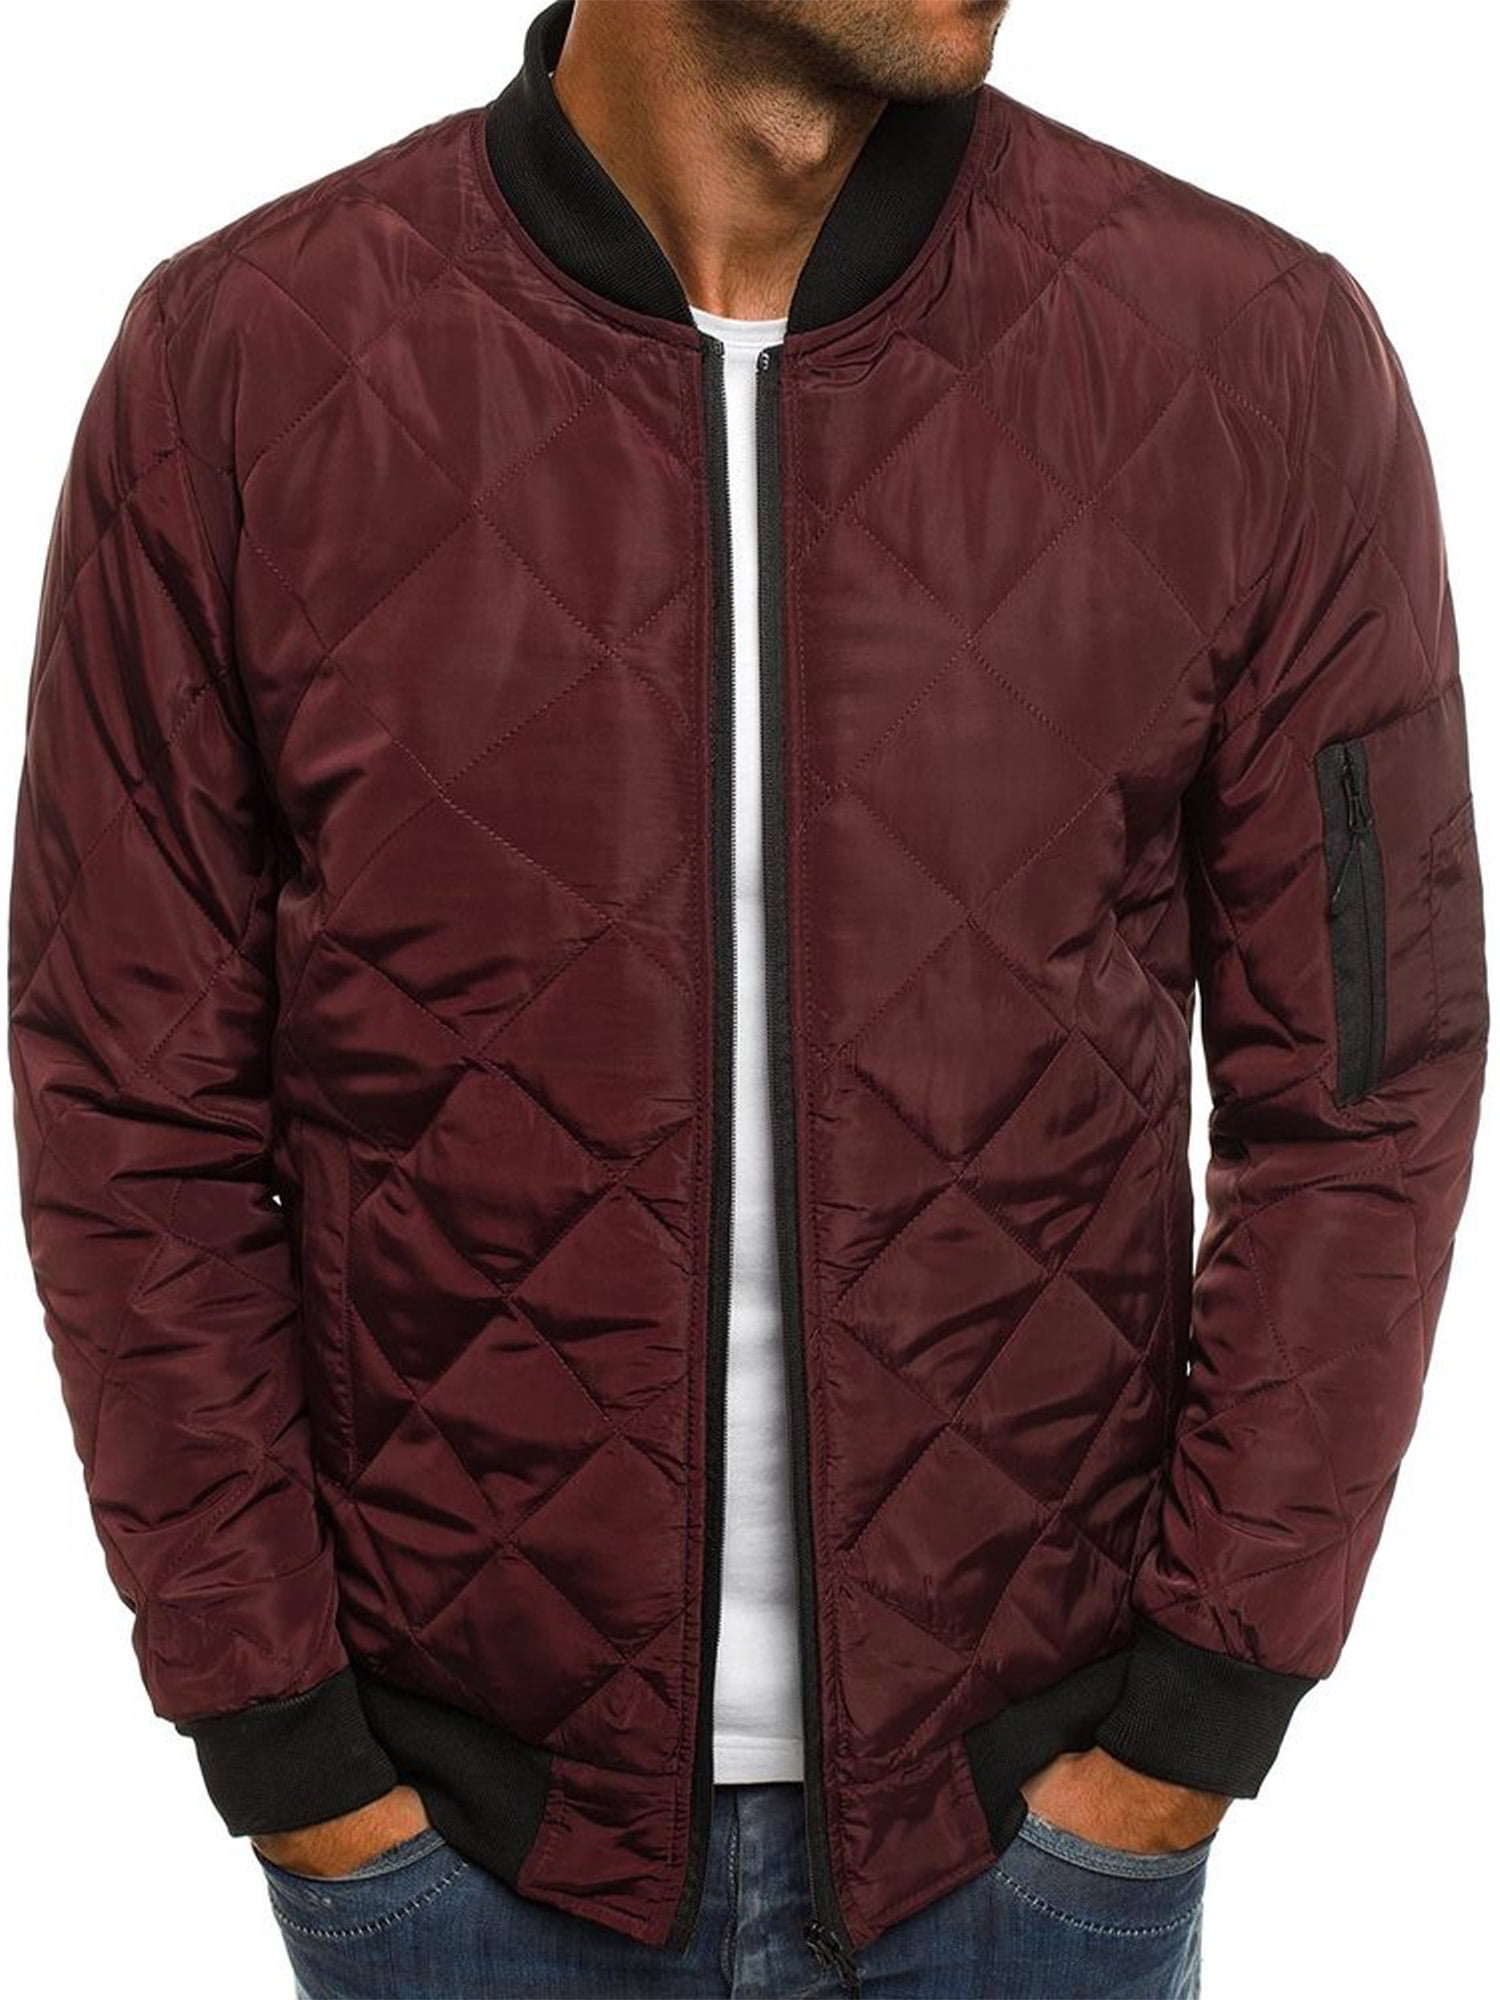 Men's Cotton Fleece Lined Jacket Slim Fit Plain Zipper Outwear Bomber Warm Coat